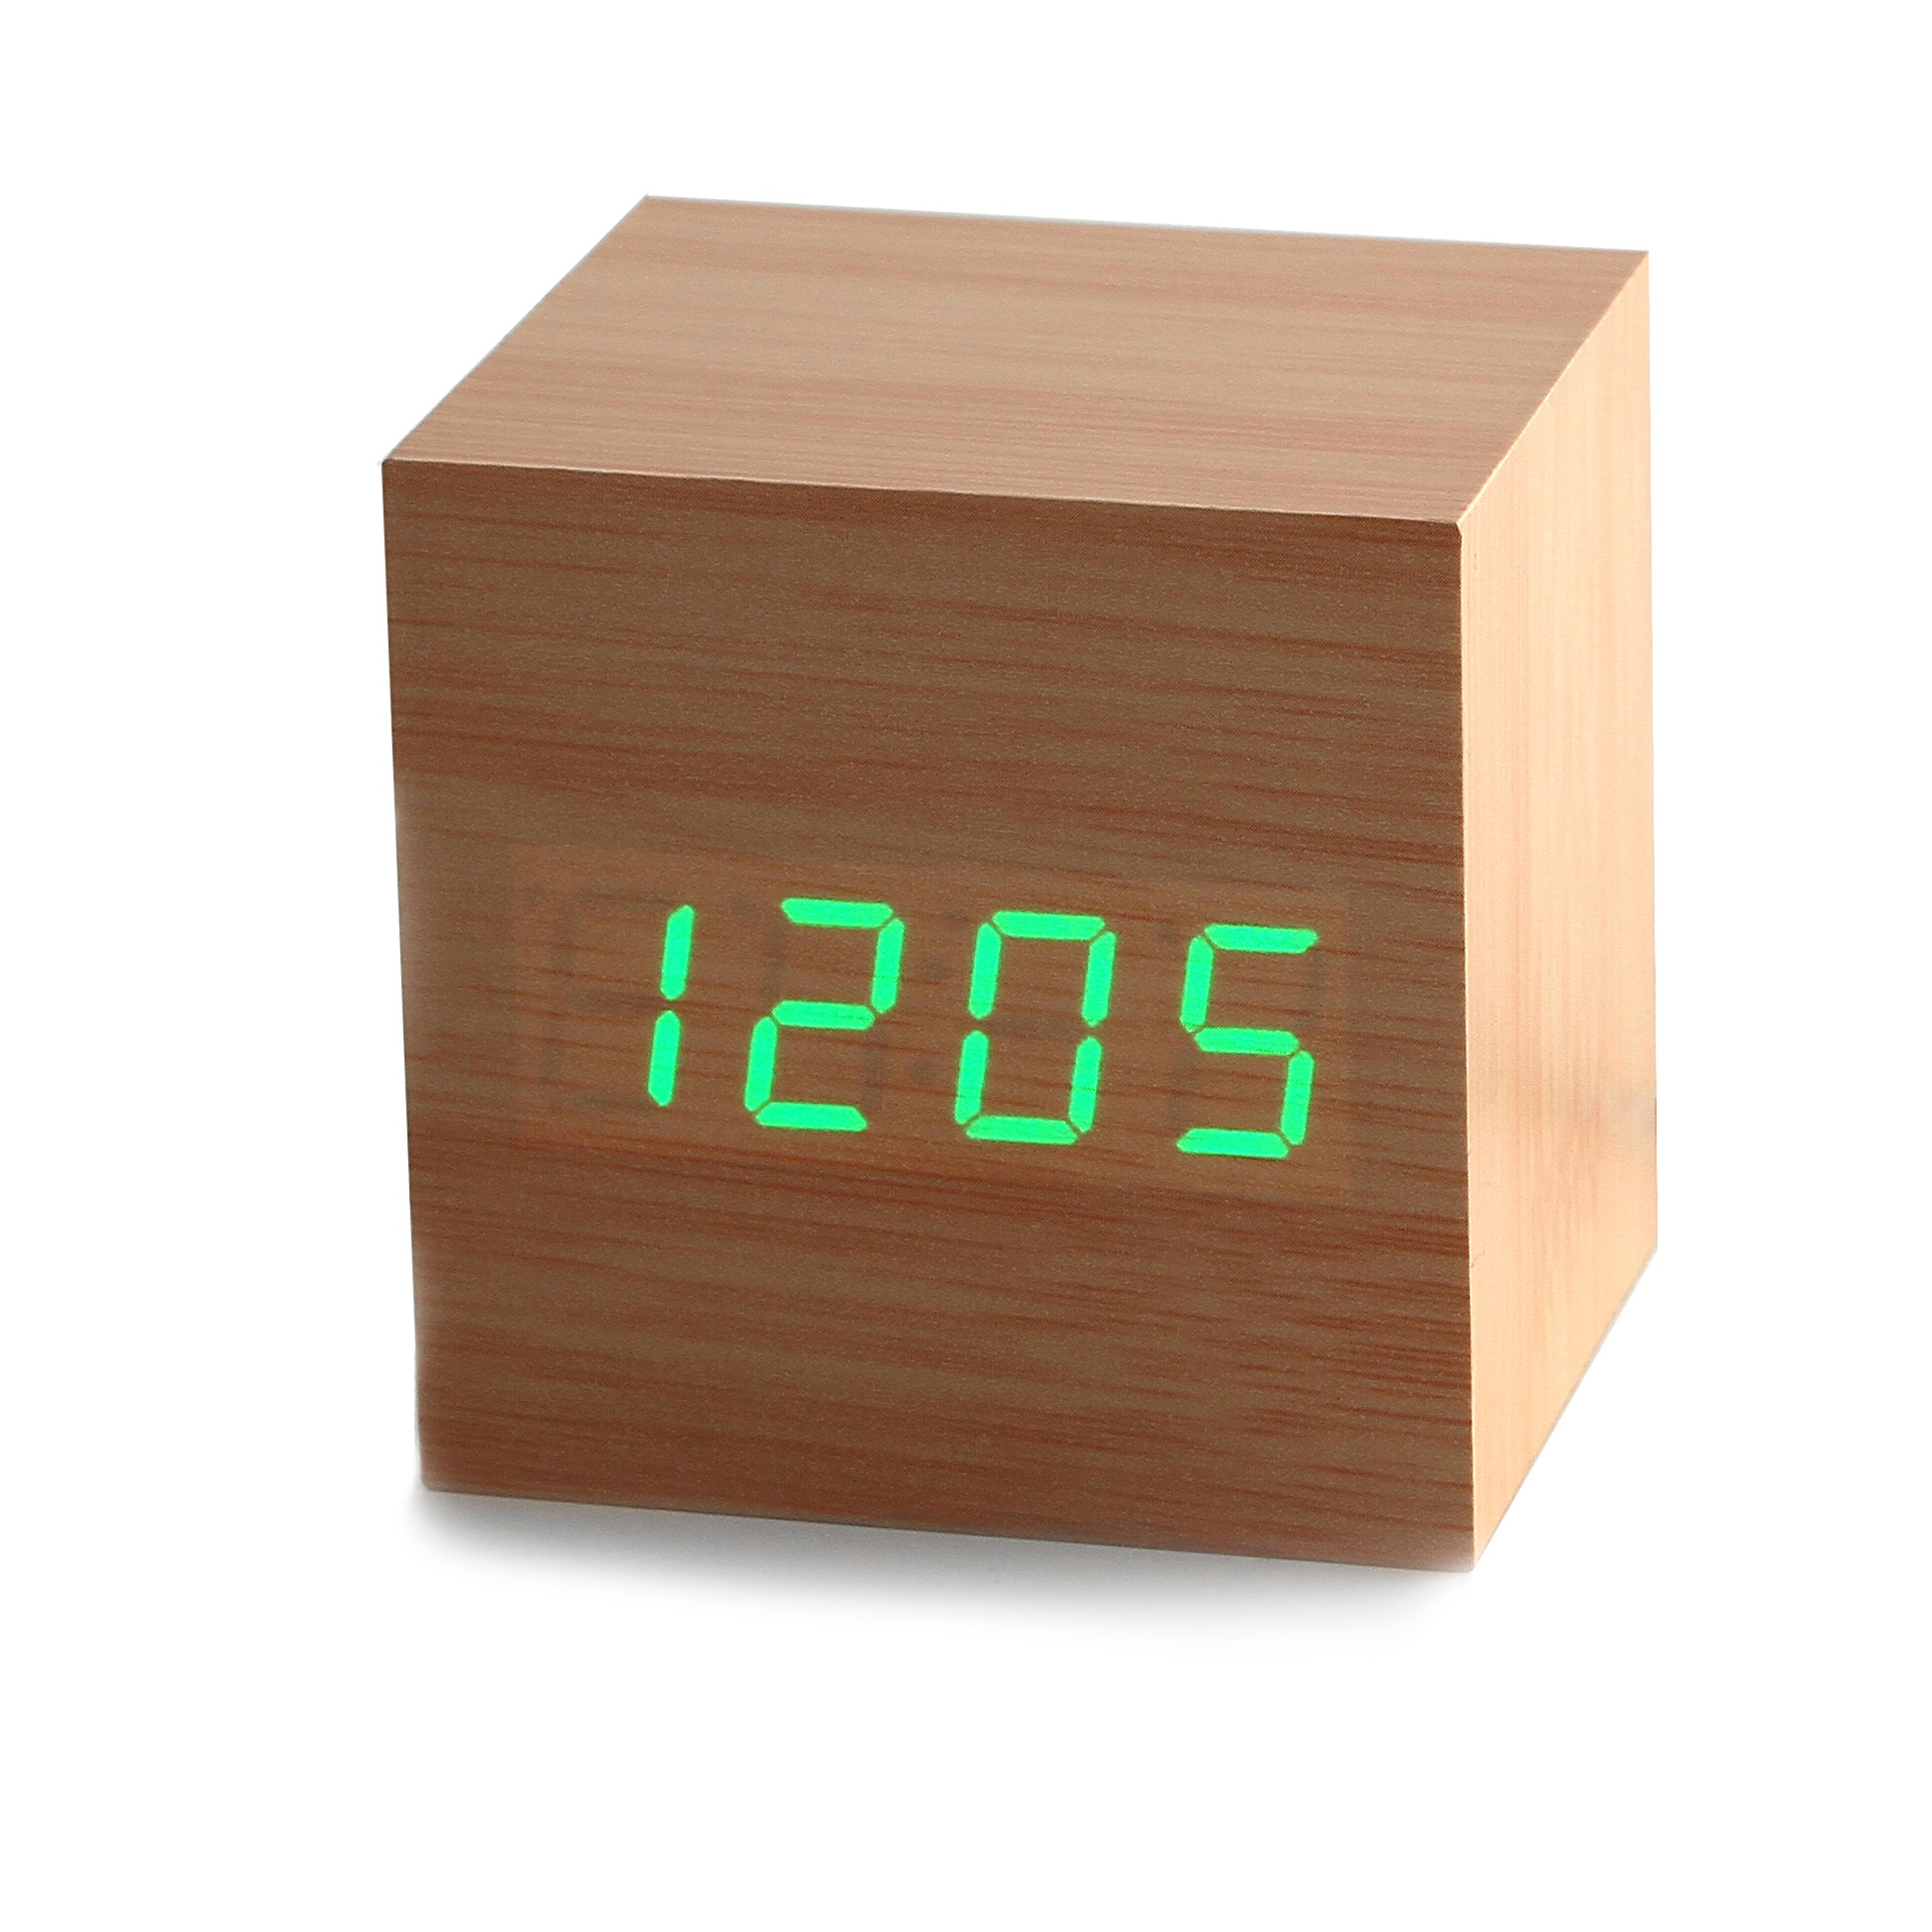 Фото Часы будильник с показаниями температуры, даты и времени  CG wood clock green